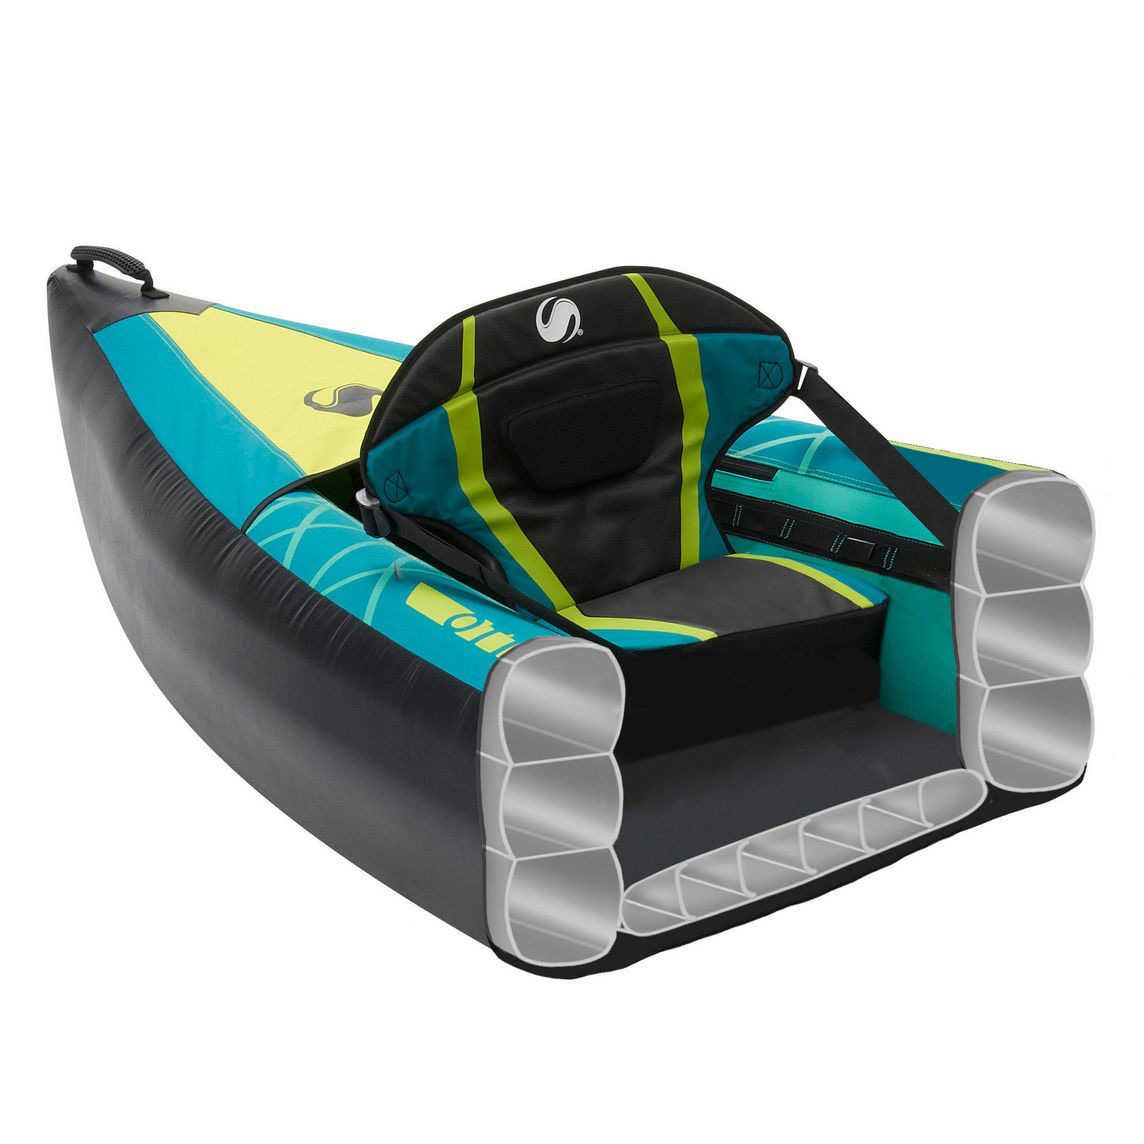 Kayak Gonflable Ottawa - 2 adultes + 1 enfant - Vert